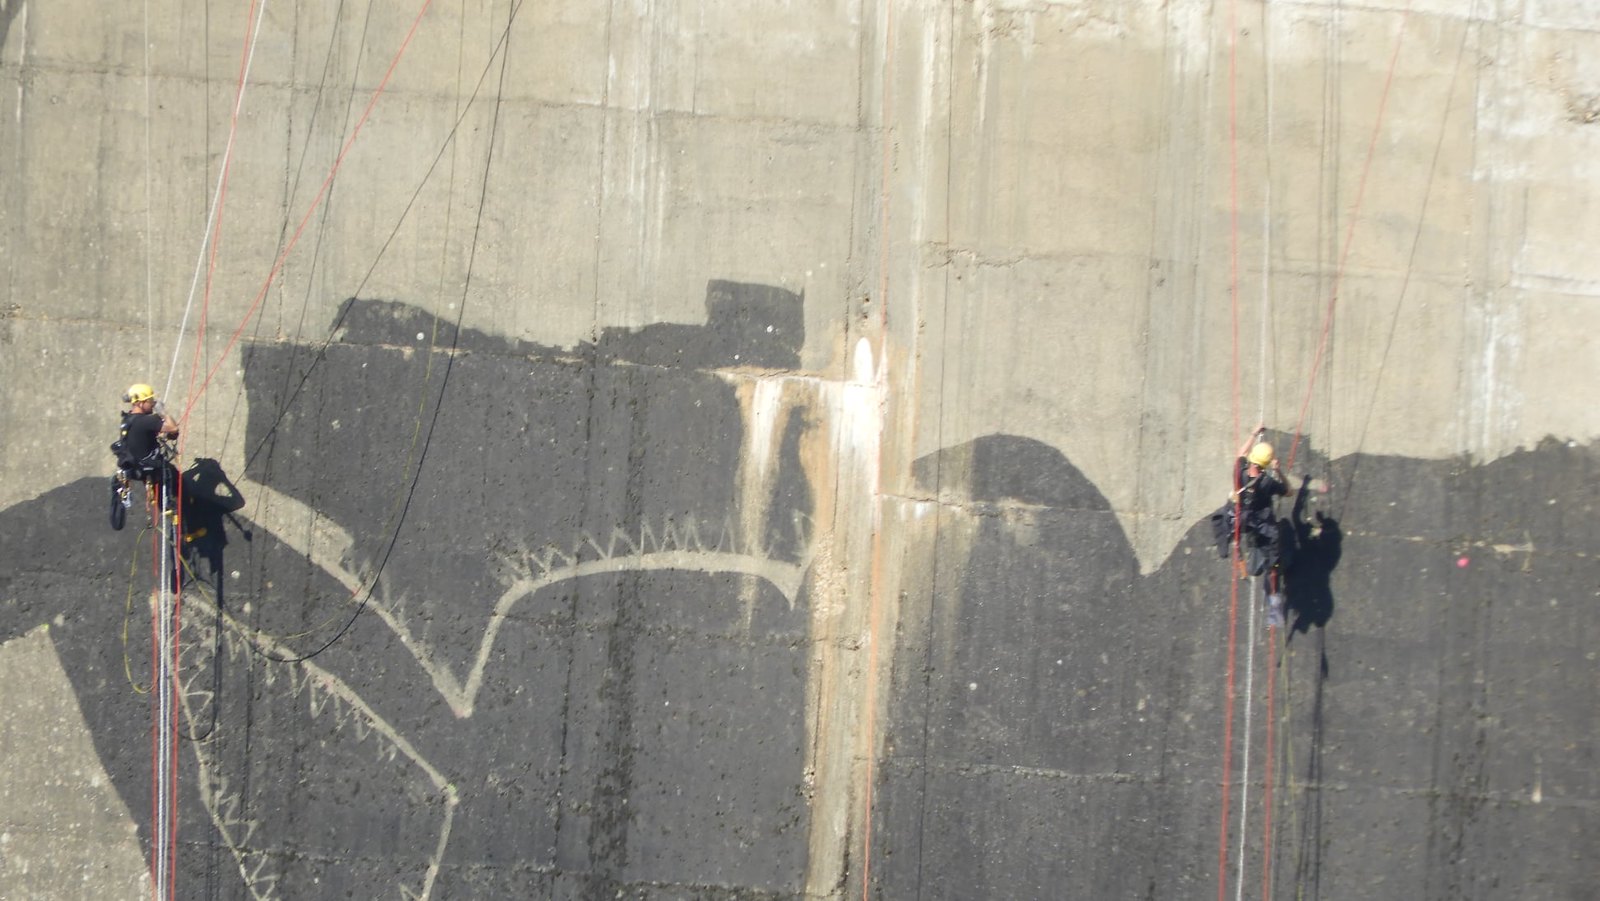 Réalisation d'une fresque sur le barrage de Vouglans